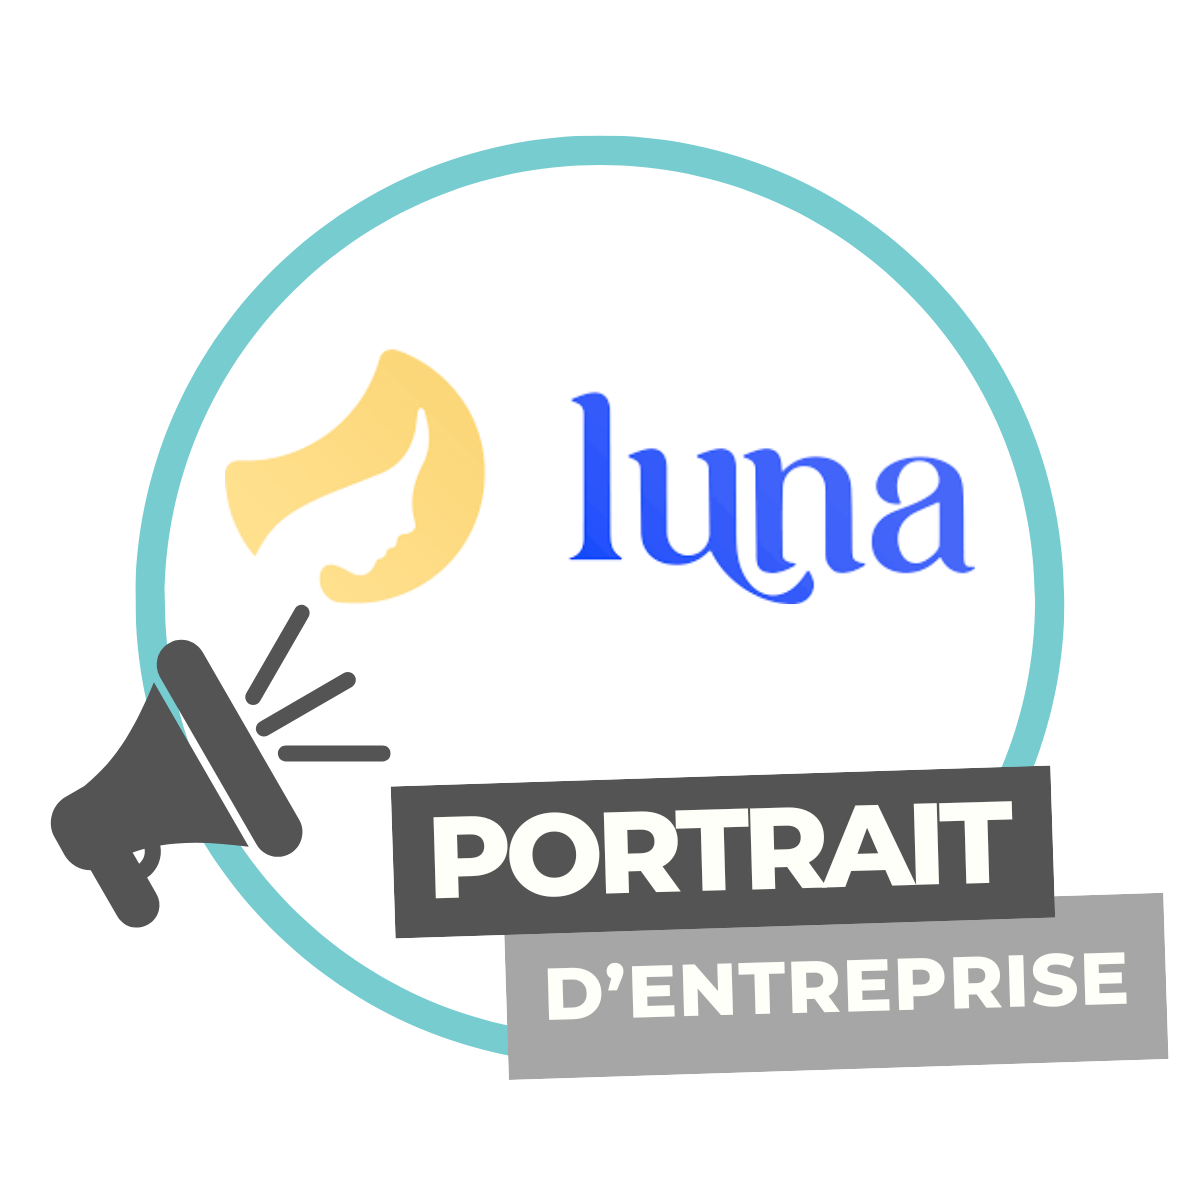 Portrait d’entreprise  | Luna